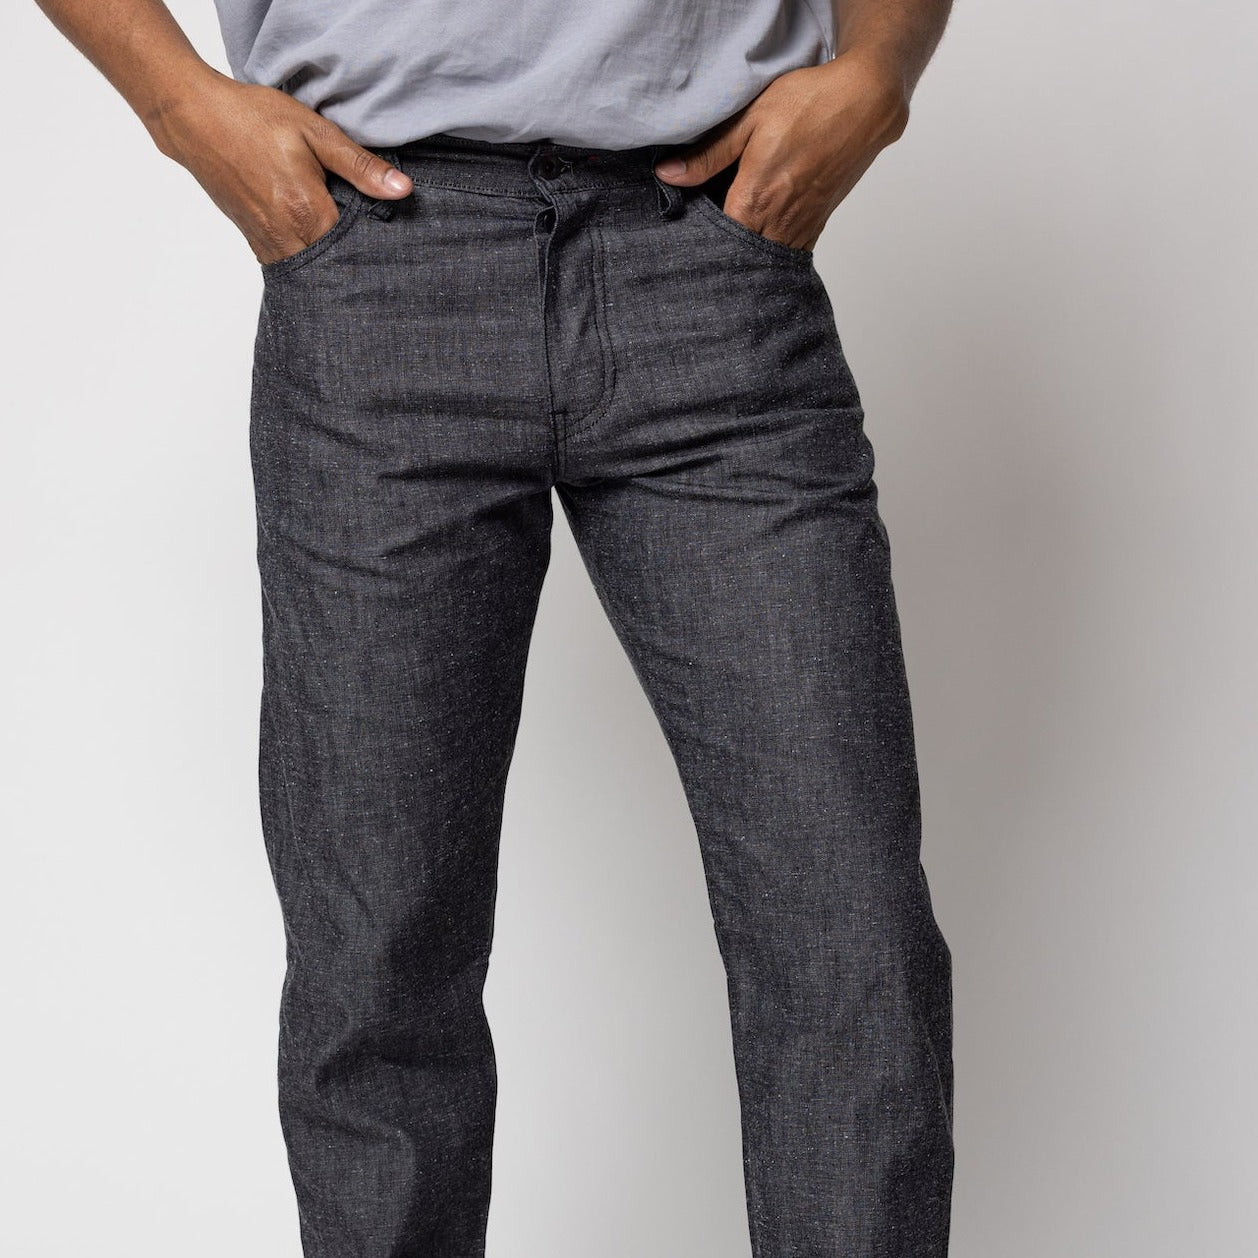 angle hover: Alexander Denim Tweed Man wears a Raleigh Workshop denim jean pant in tweed